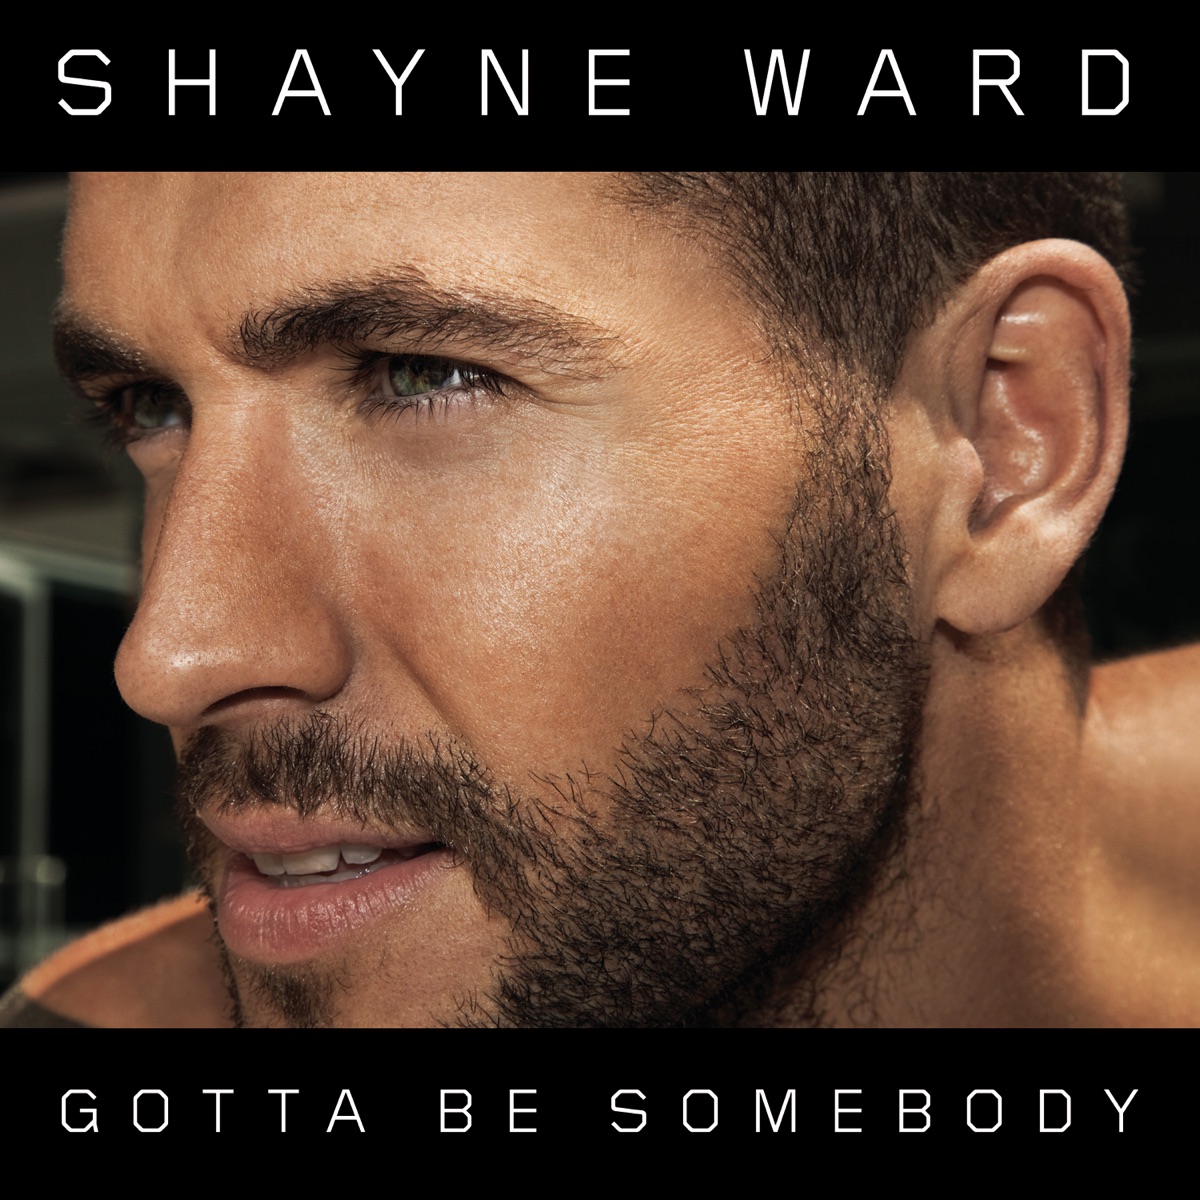 Shayne Ward — Gotta Be Somebody cover artwork